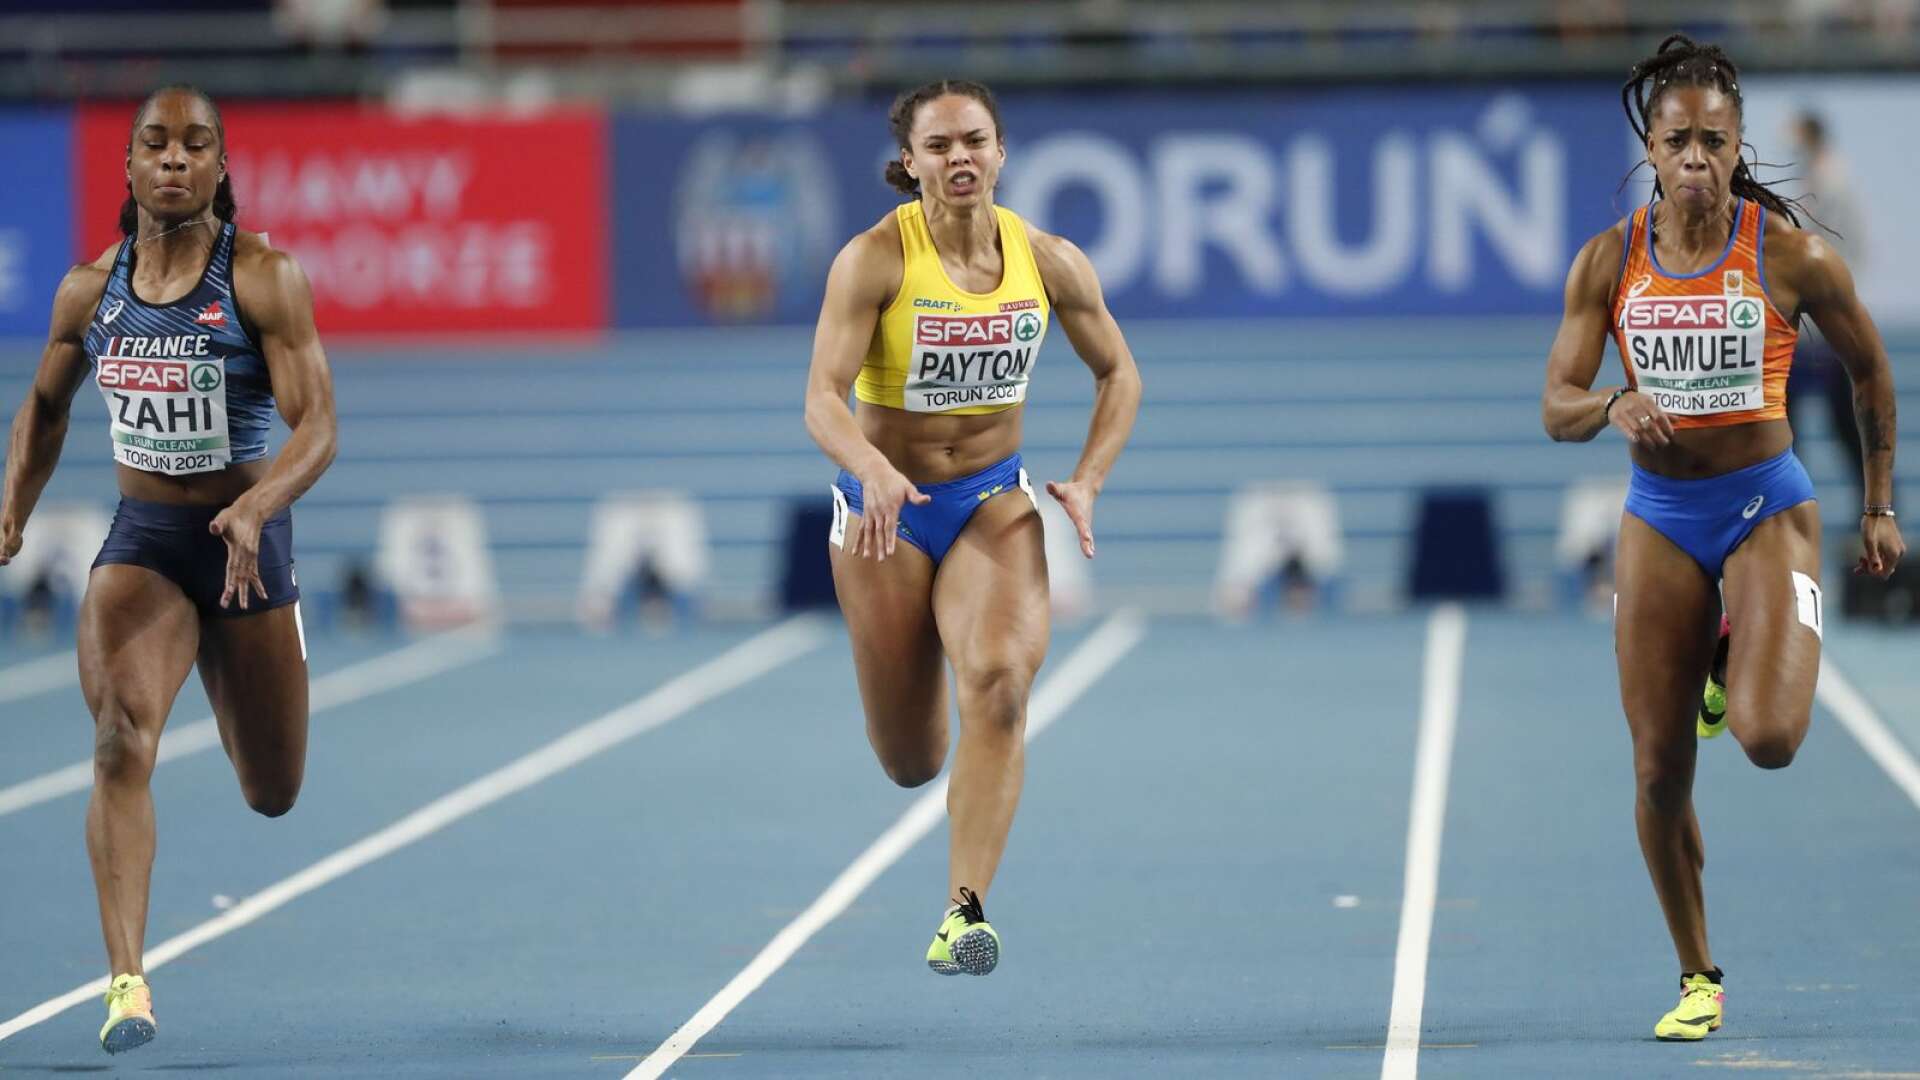 Claudia Payton skrällde genom att ta sig till final på 60 meter i friidrotts-EM, men räckte inte i finalen utan slutade sist.